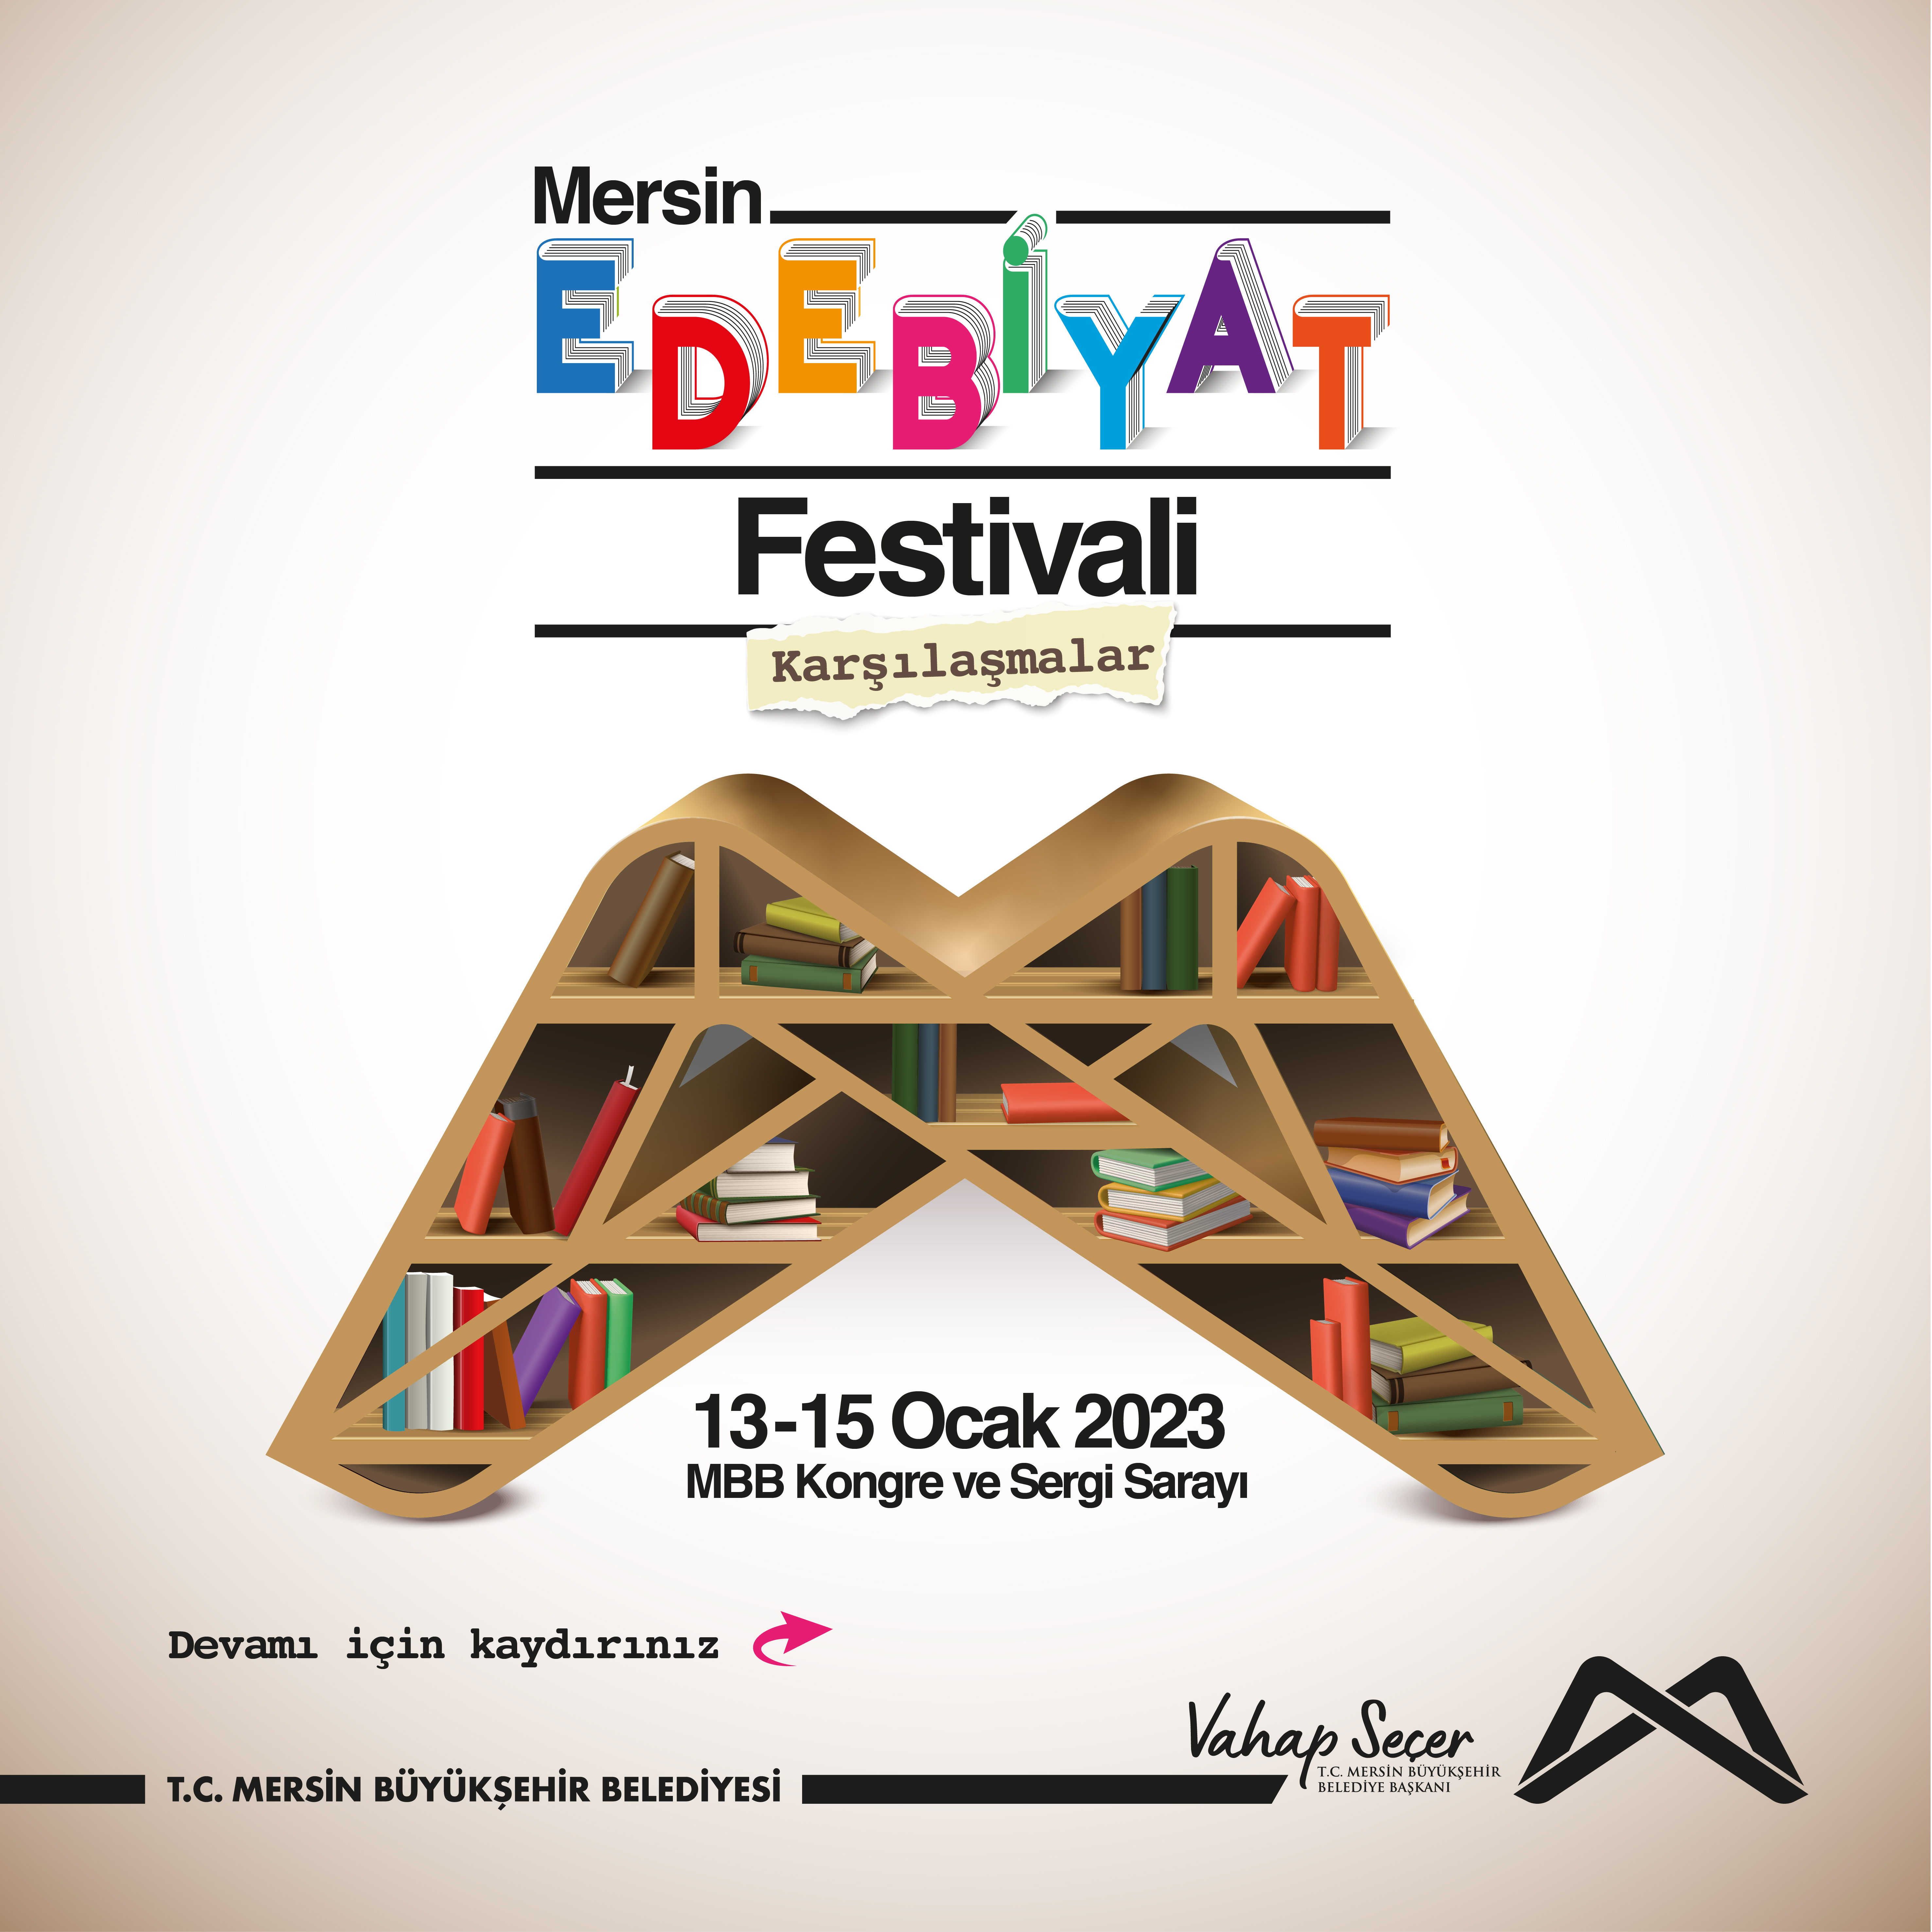 Mersin Edebiyat Festivali'nin detaylı programı